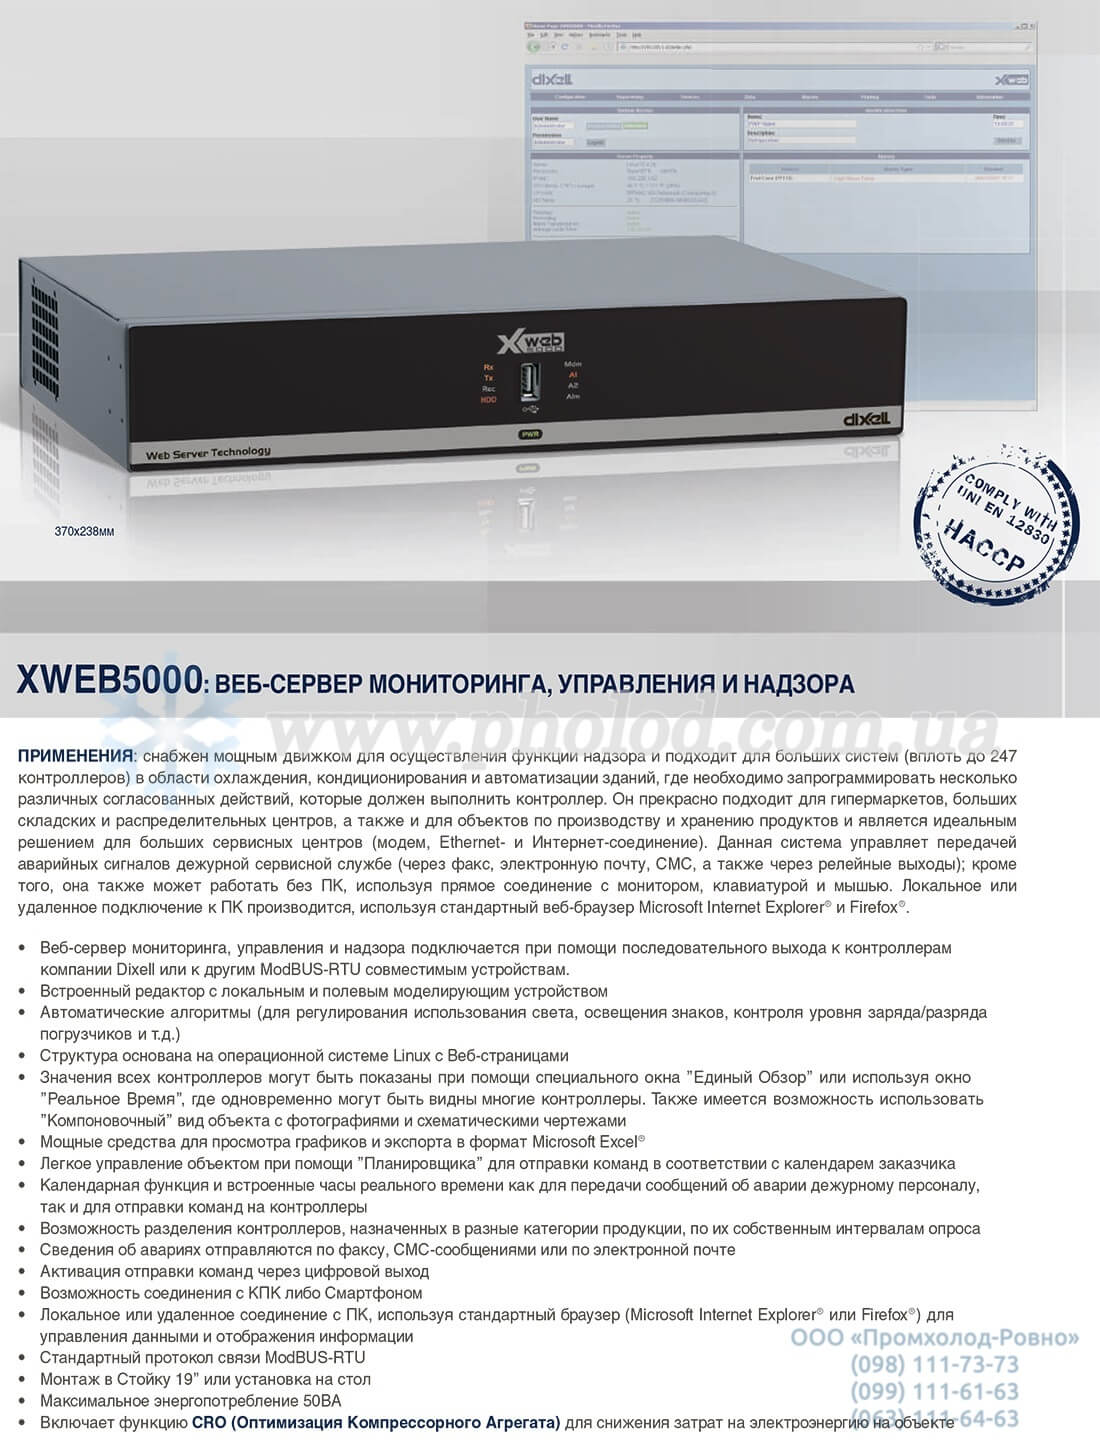 XWEB5000 - 1